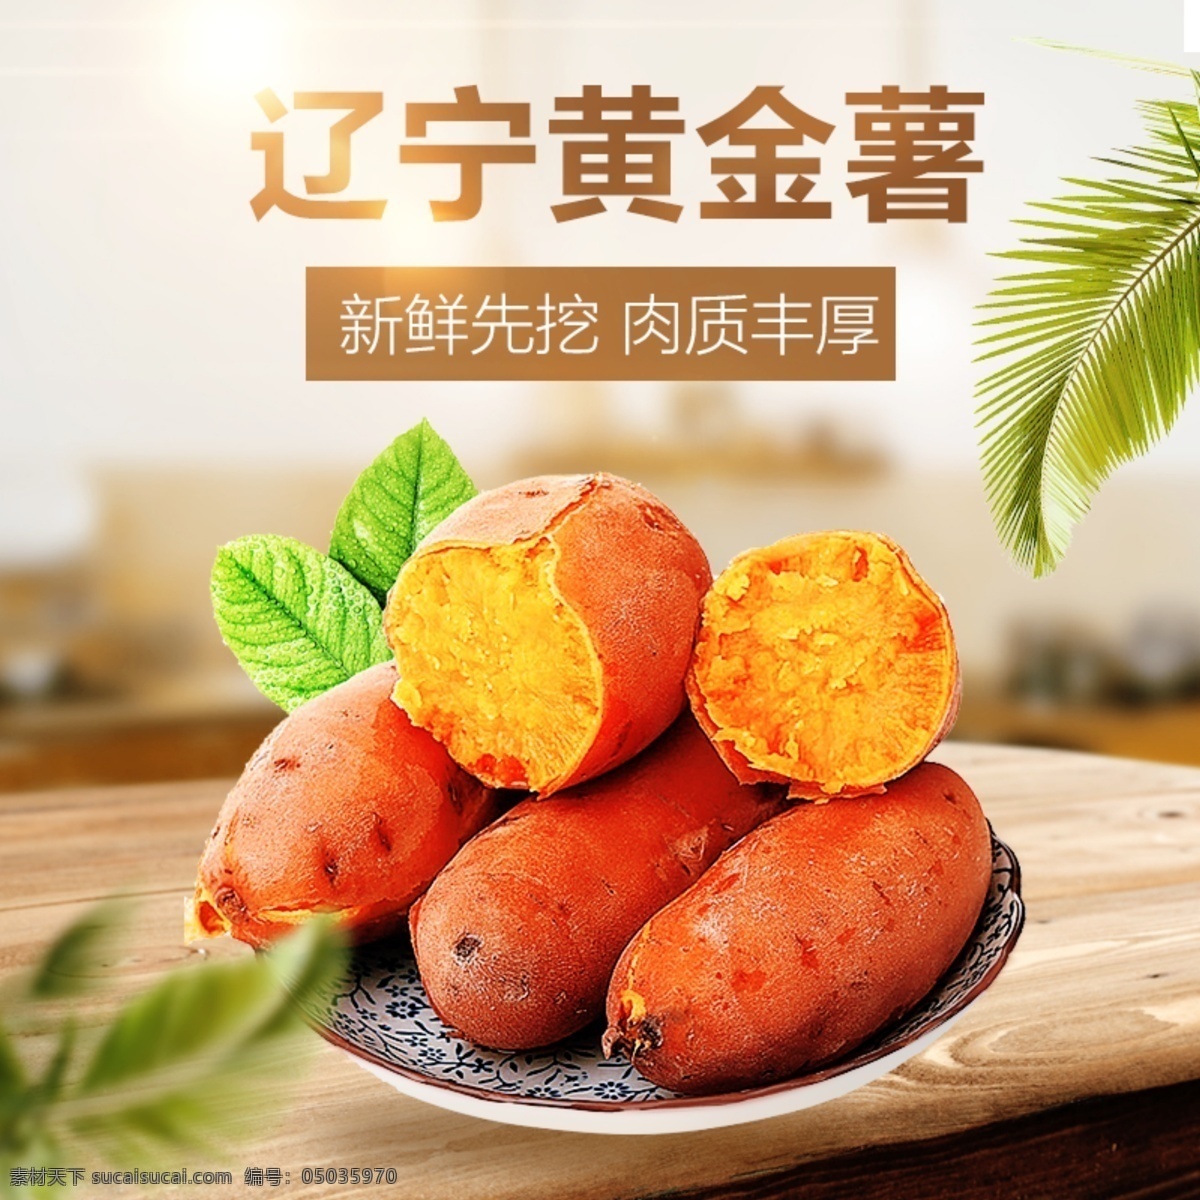 辽宁 昌图 黄金 薯 主 图 红薯 健康 有机 自然 绿色 黄金薯